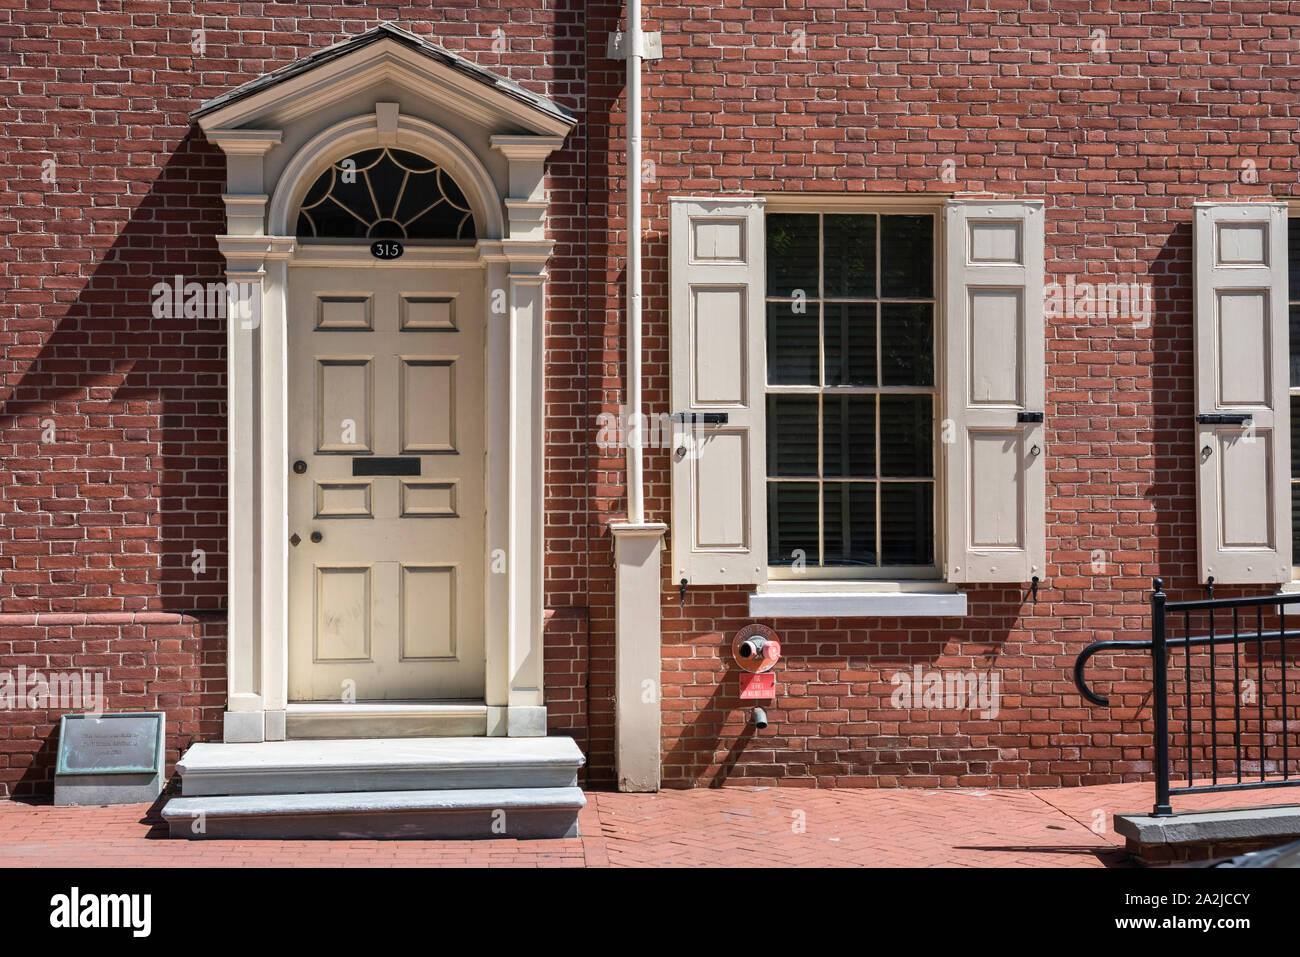 Historique de Philadelphie, vue de la maison du Dr William McIlvaine (1793), une maison en rangée de style géorgien situé dans la région de Walnut Street, Philadelphia, PA, USA Banque D'Images